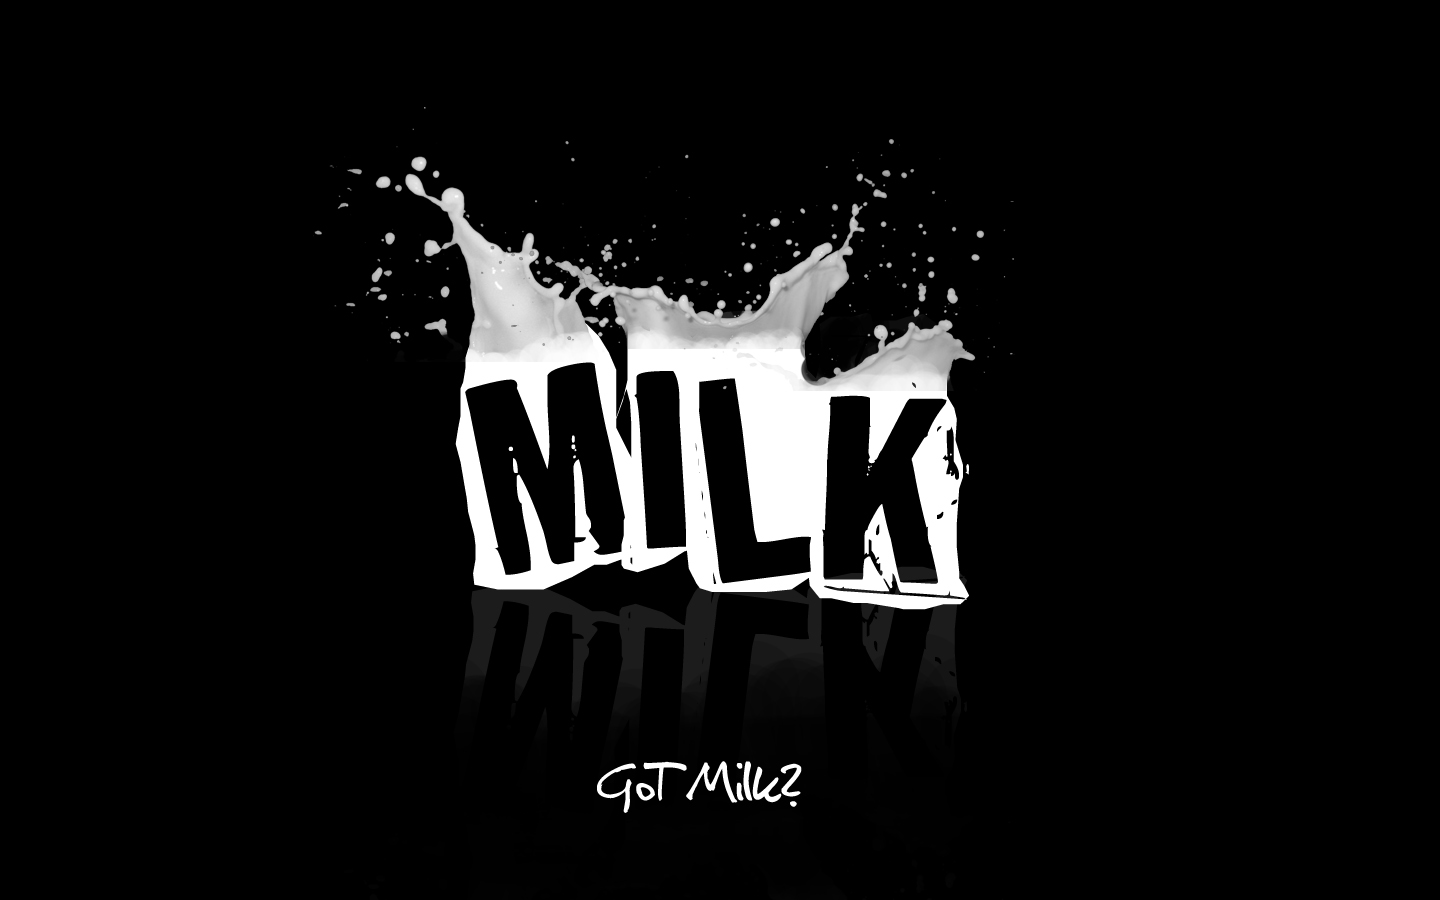 Got Milk by JusticeBleeds